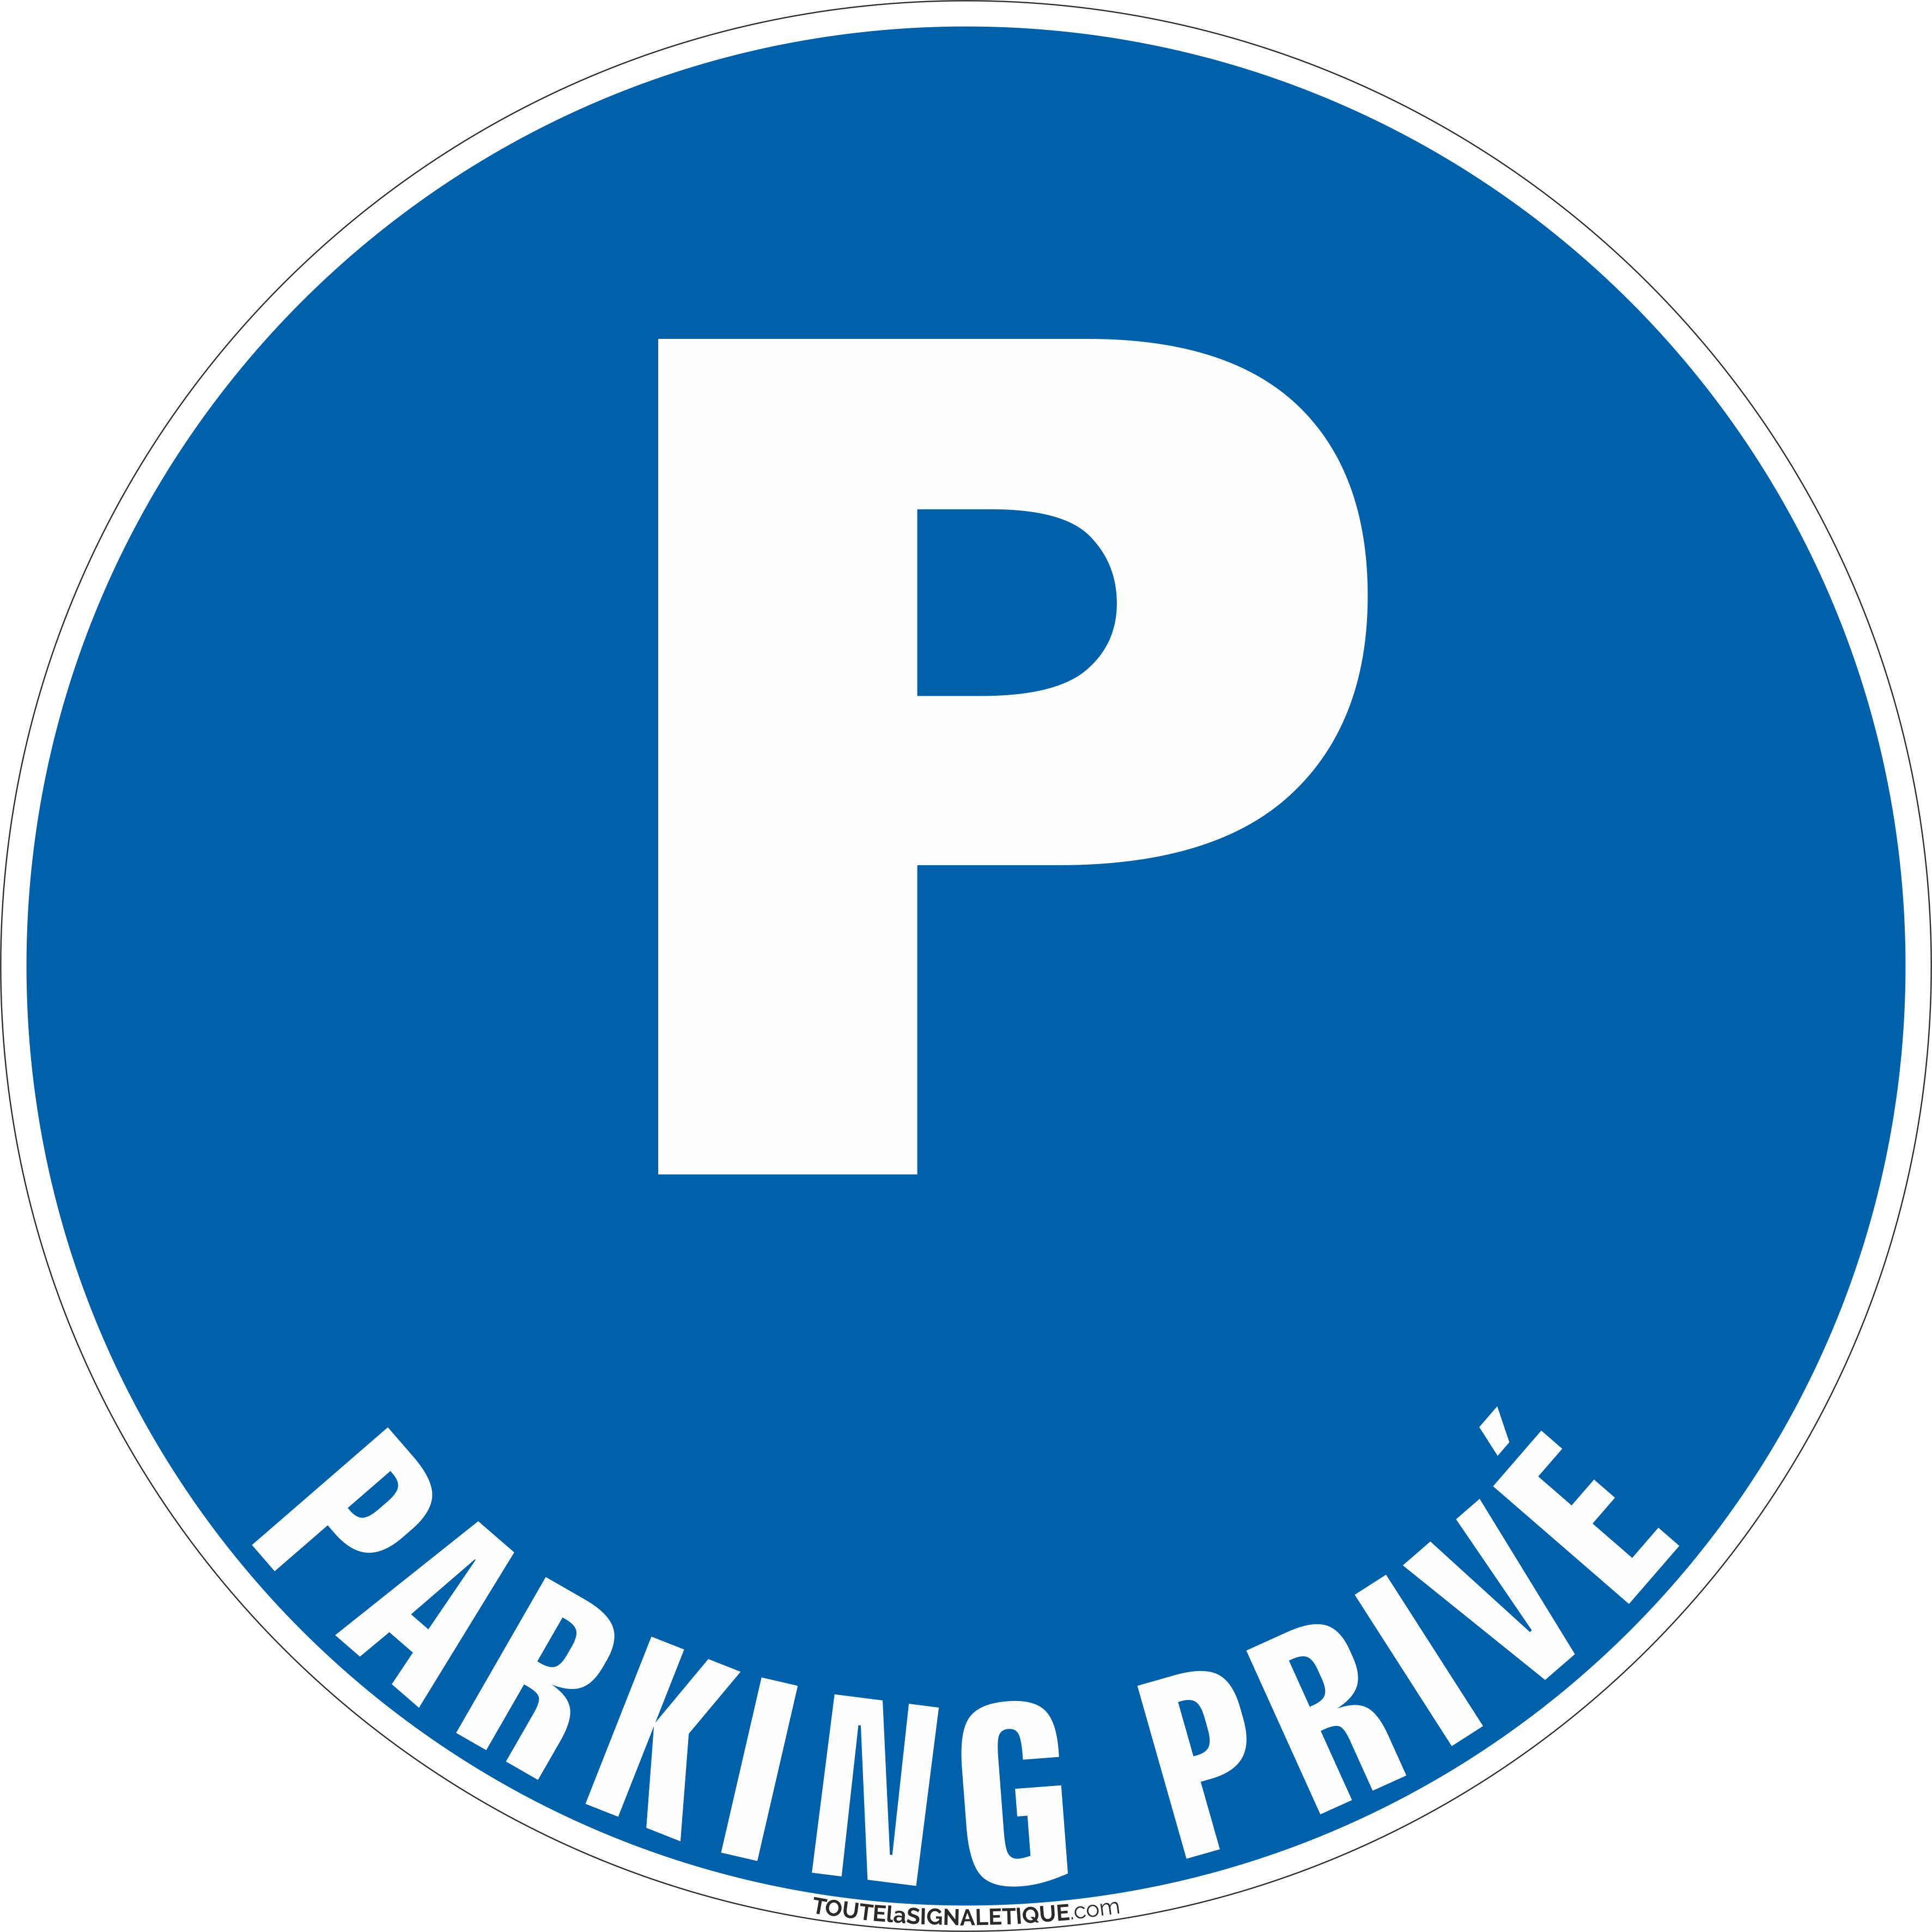 Parking privé formats et matières au choix